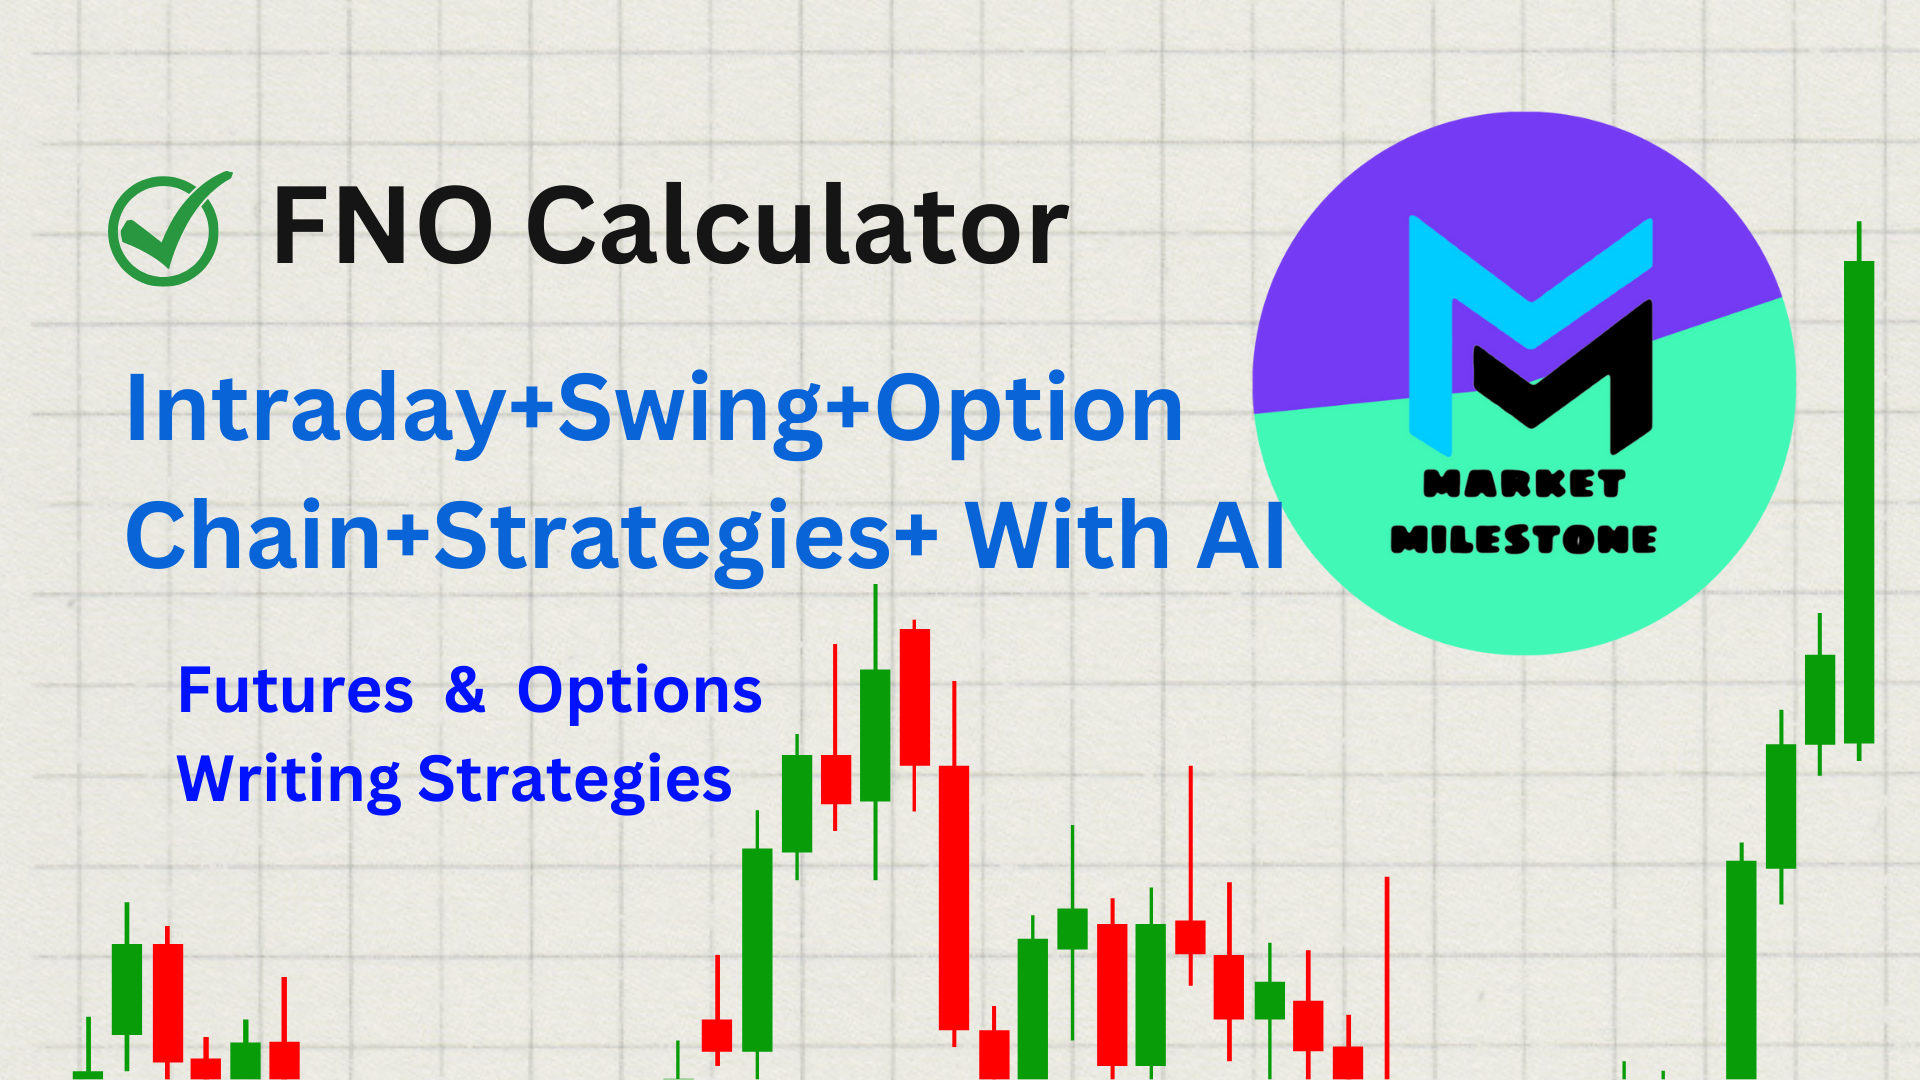 FNO Calculator By Market Milestone